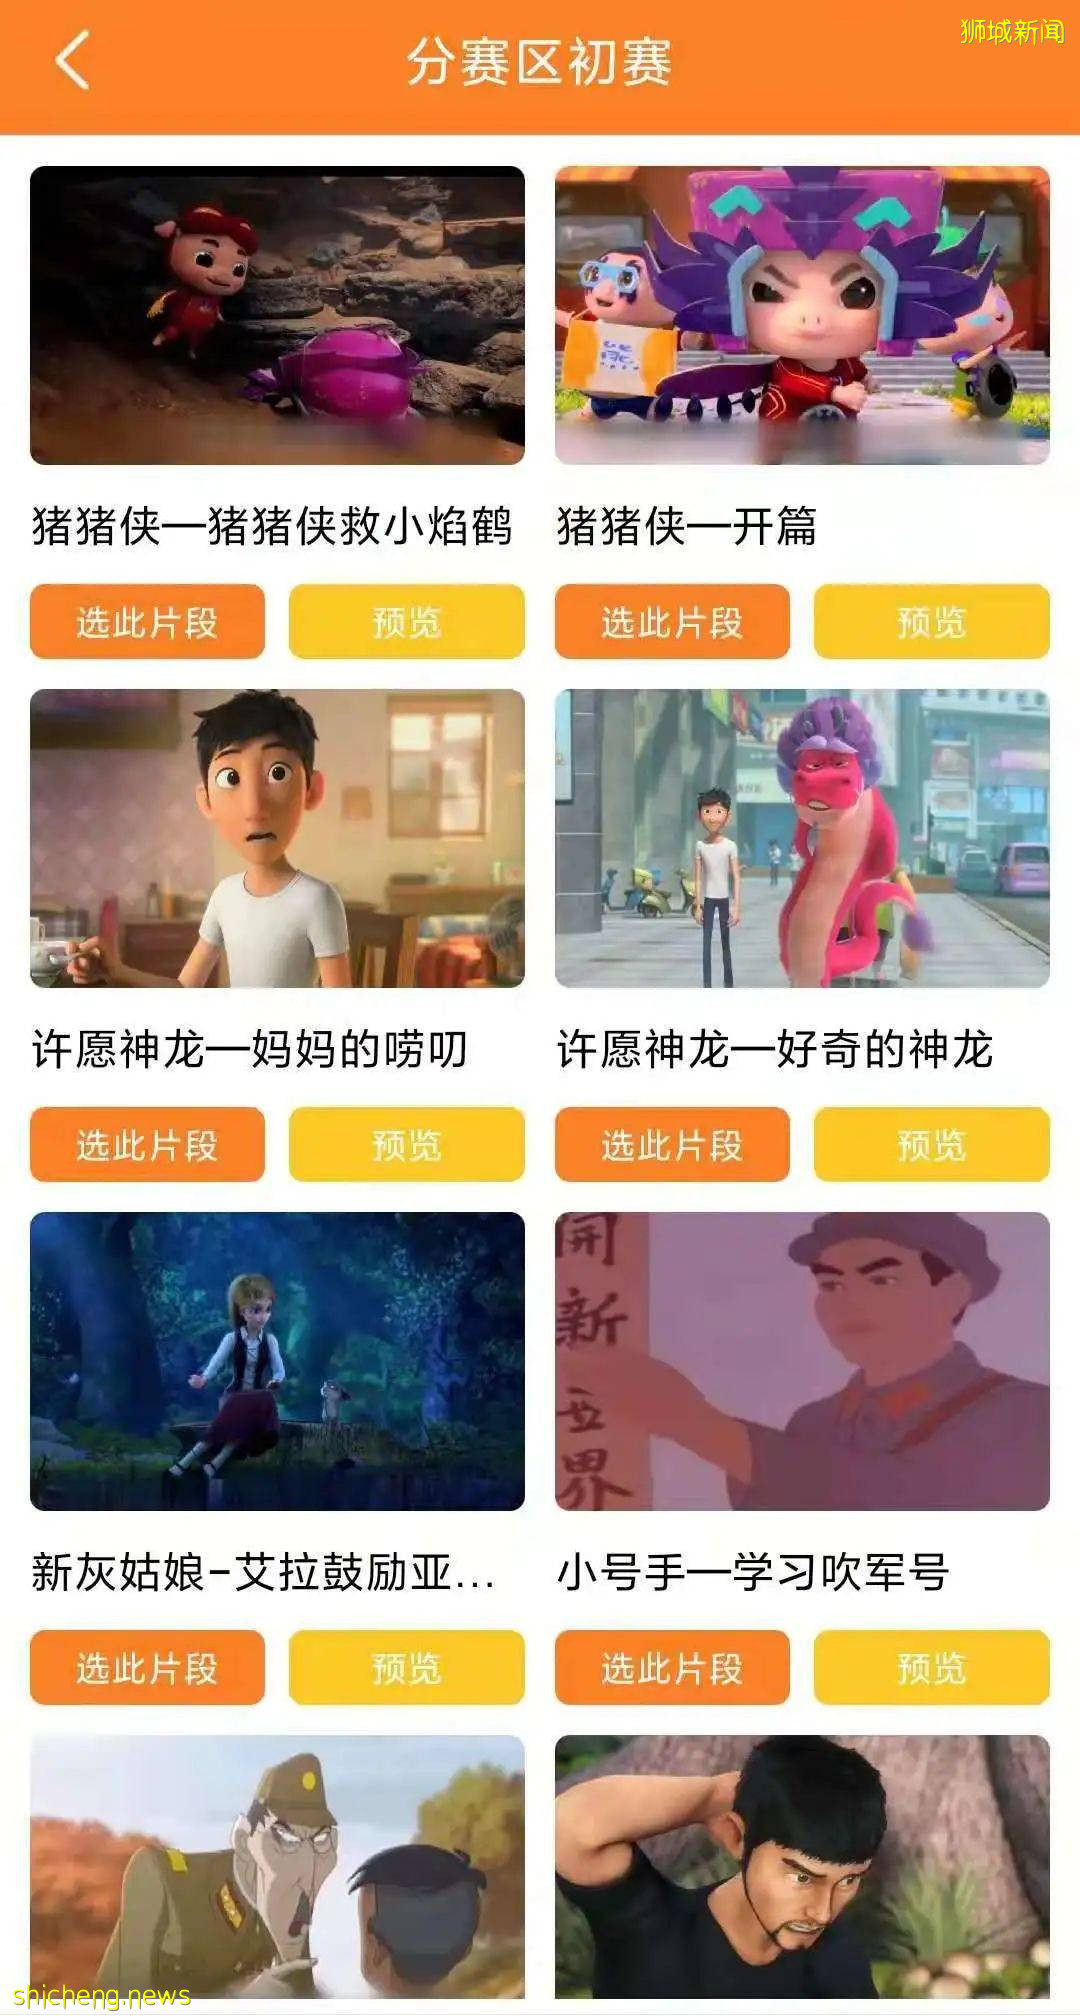 第十二屆中華少兒電影配音大賽正式啓動